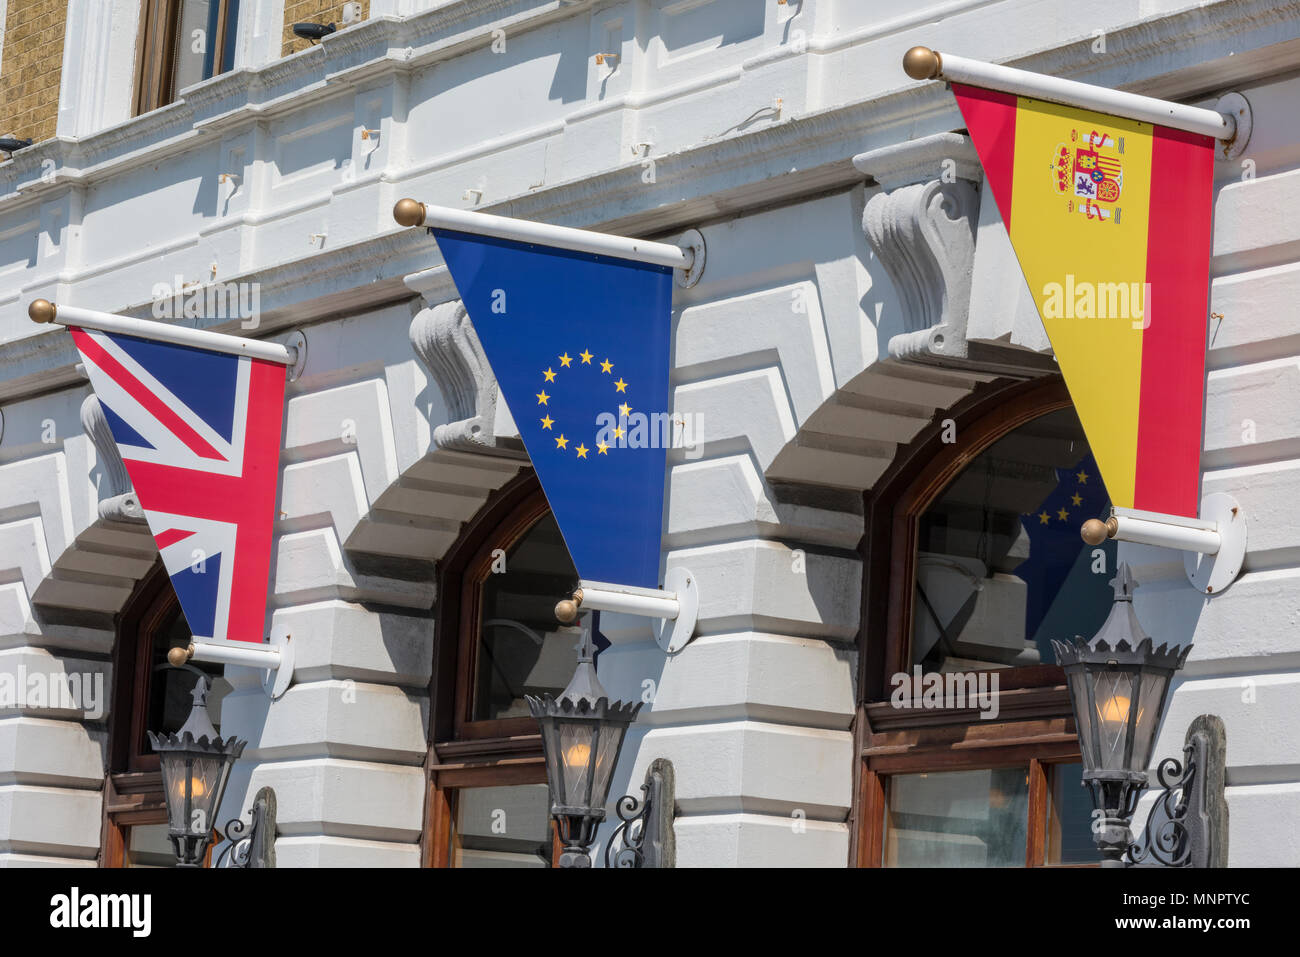 Spagnolo e britannico e bandiere europee tutti volare insieme al di fuori di un grande classico edificio progettato con archi. pennoni e gli emblemi europea. Foto Stock